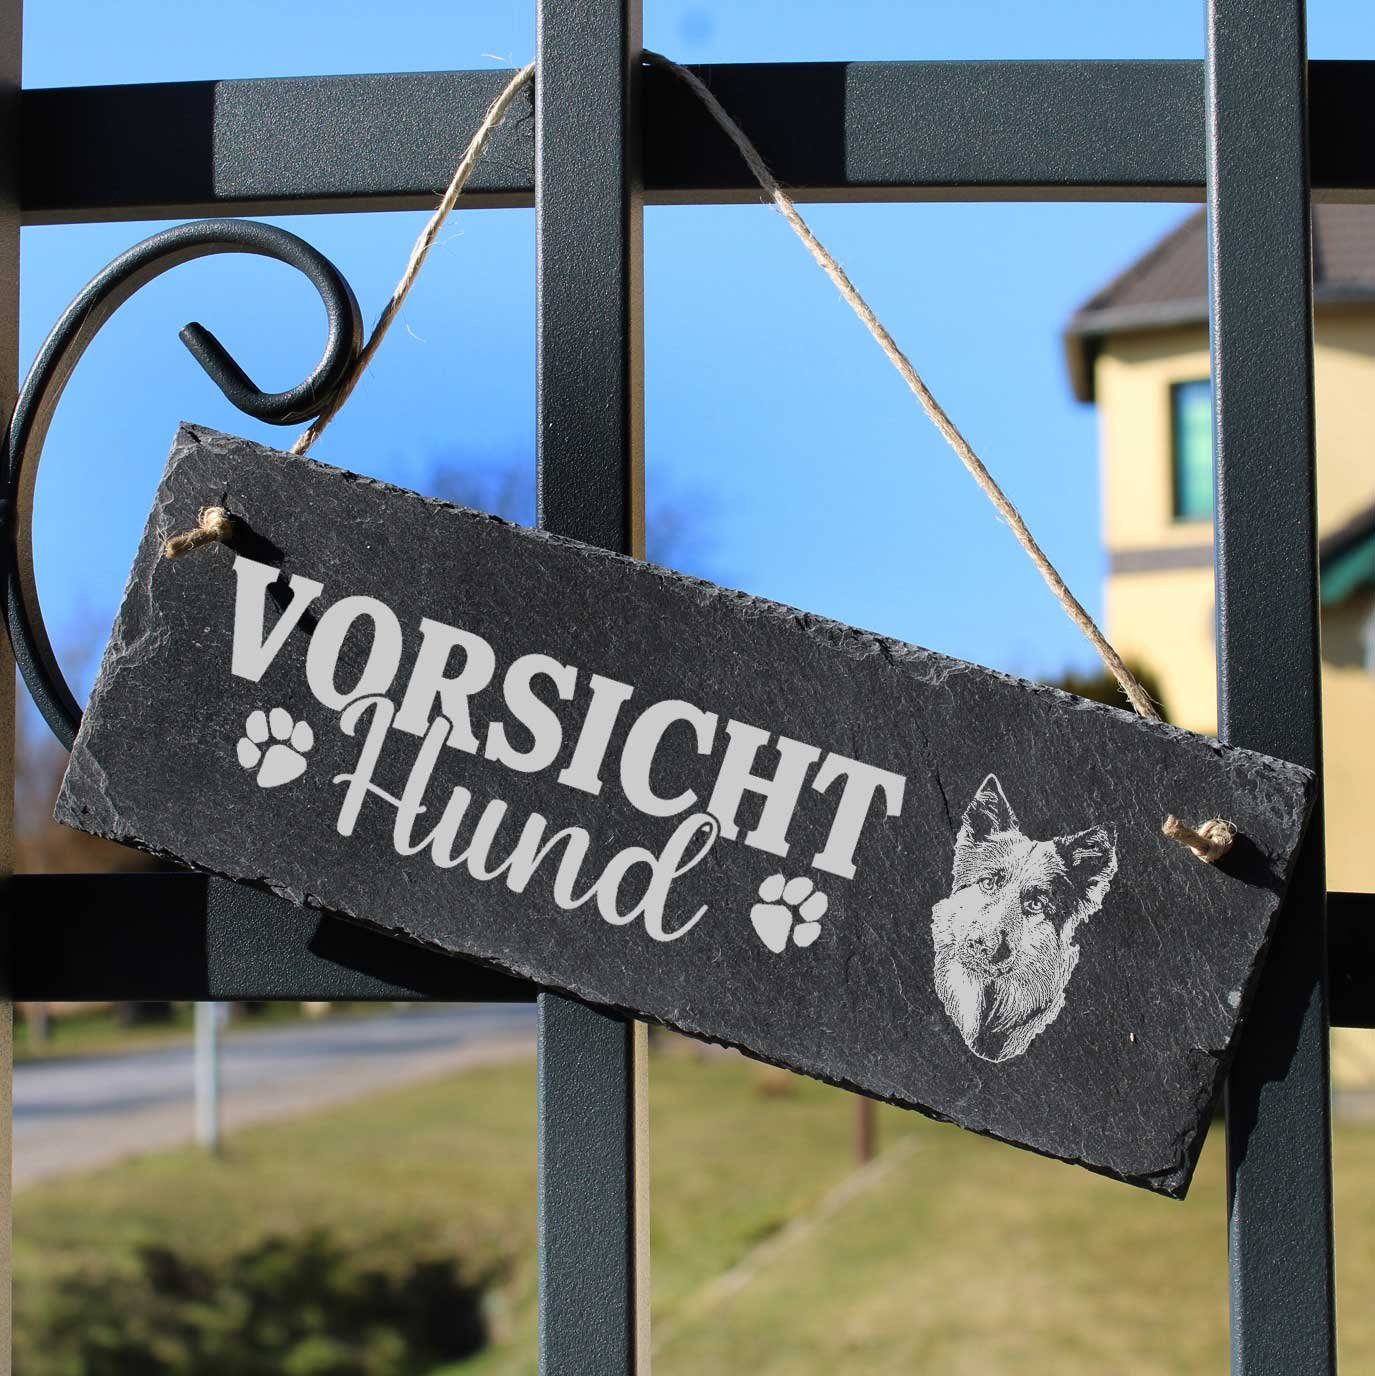 Hund Schäferhund Vorsicht 22x8cm Altdeutscher Schild Dekolando Hängedekoration